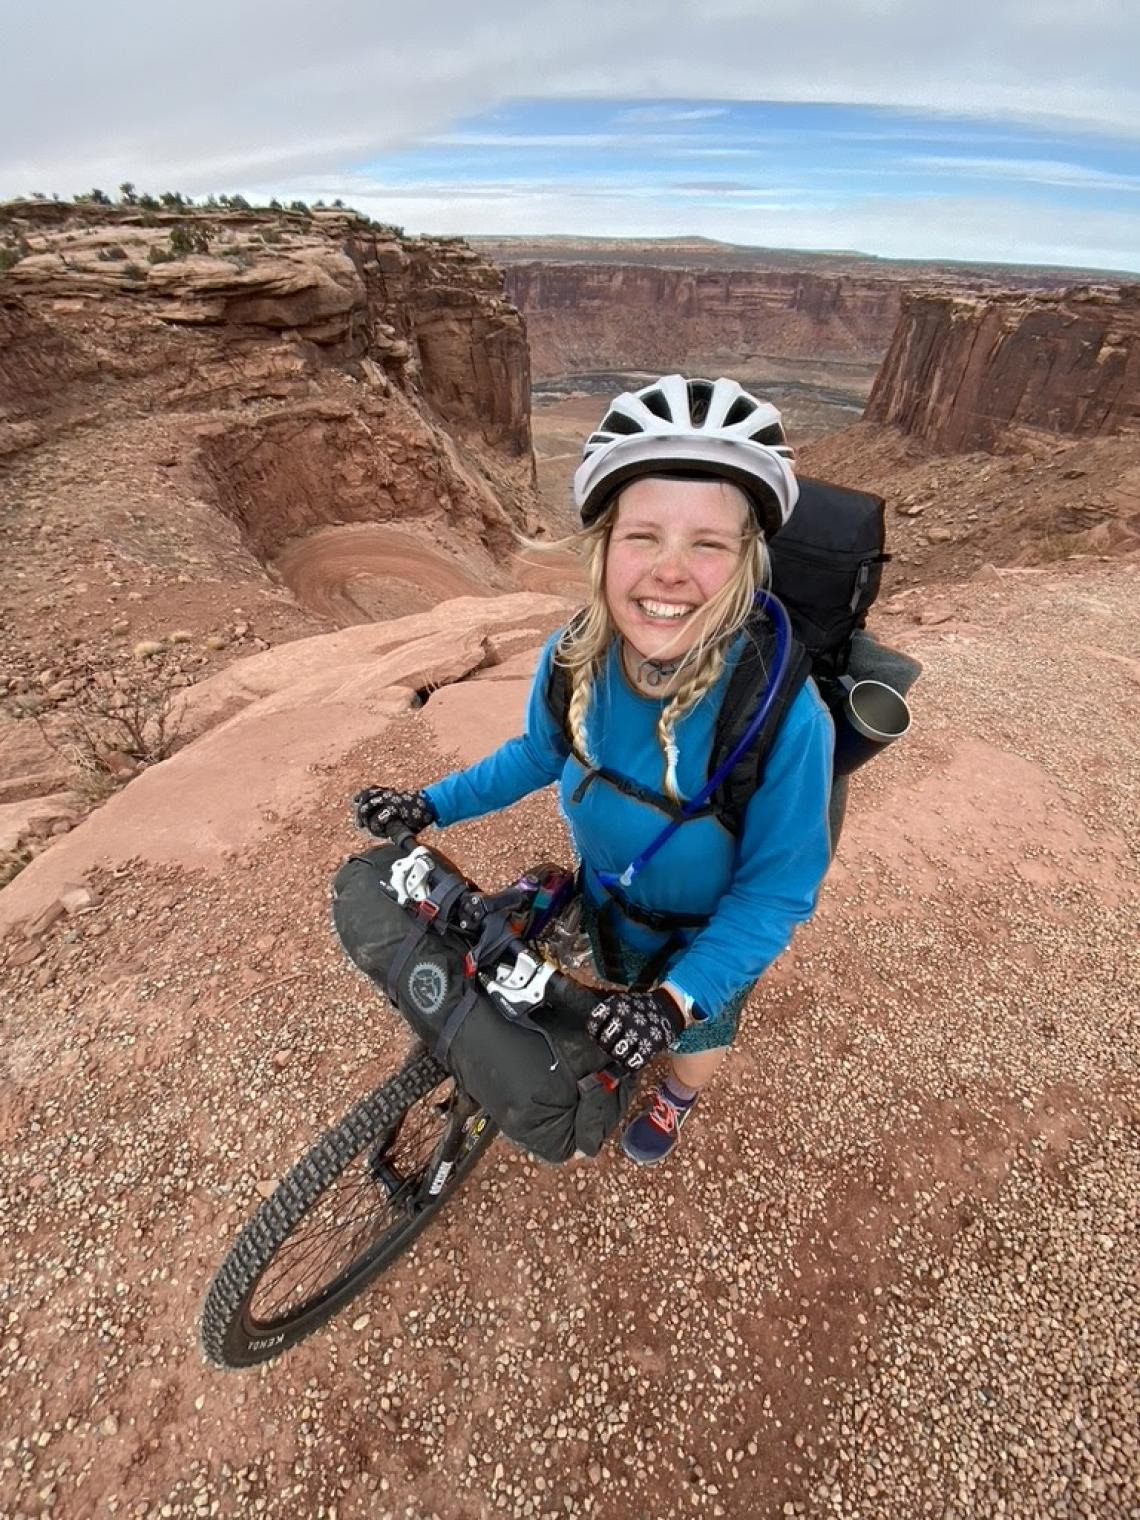 Franny Slater riding a bike in the desert